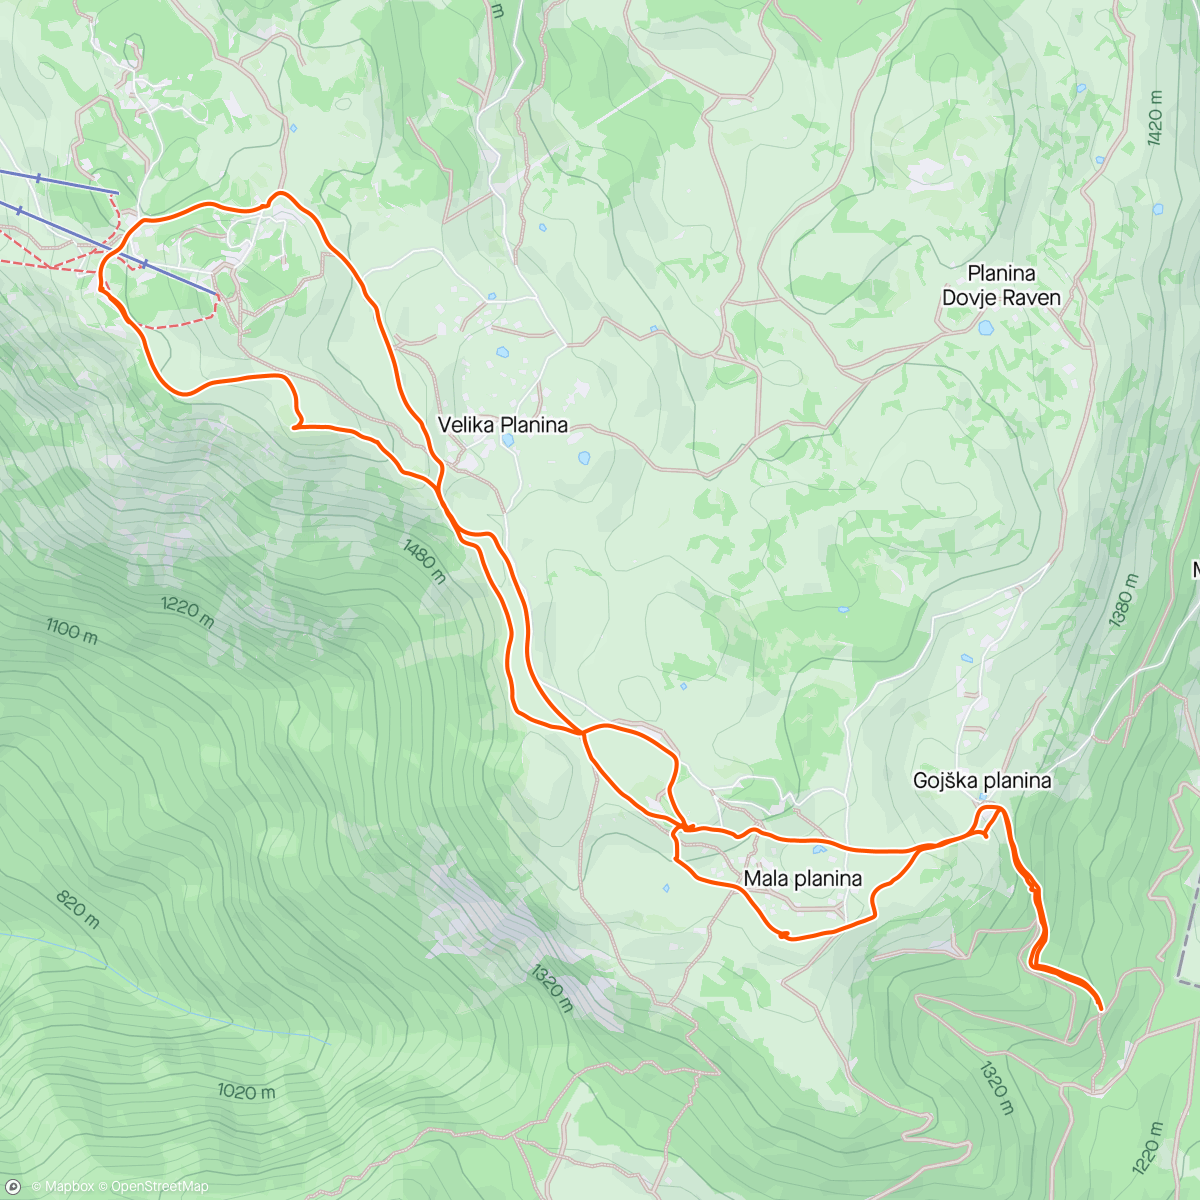 「Velika Planina」活動的地圖